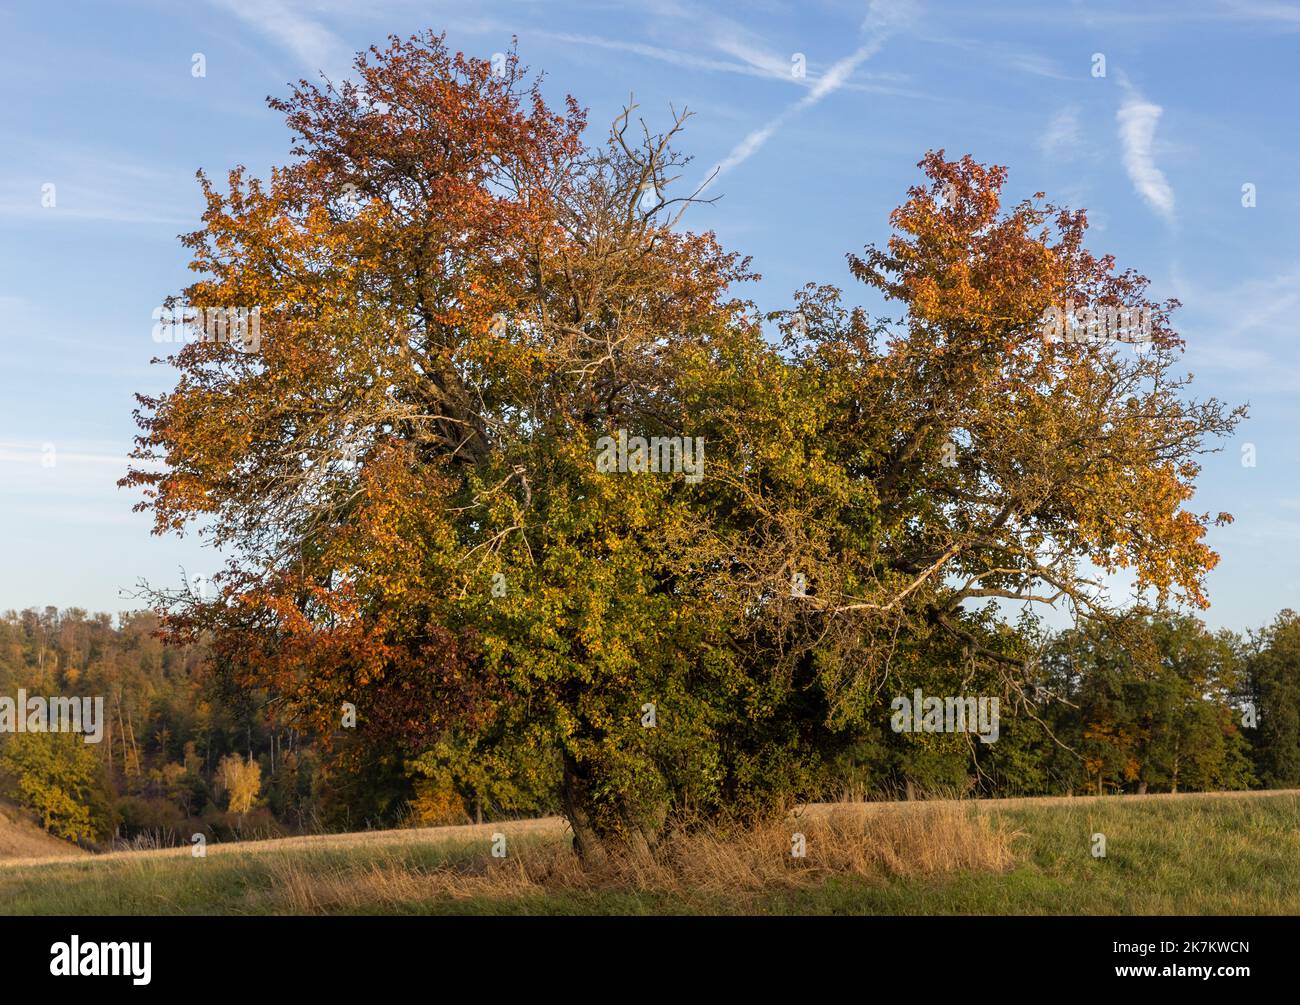 alter einzelner Baum im Herbstgewand Herzform Stock Photo